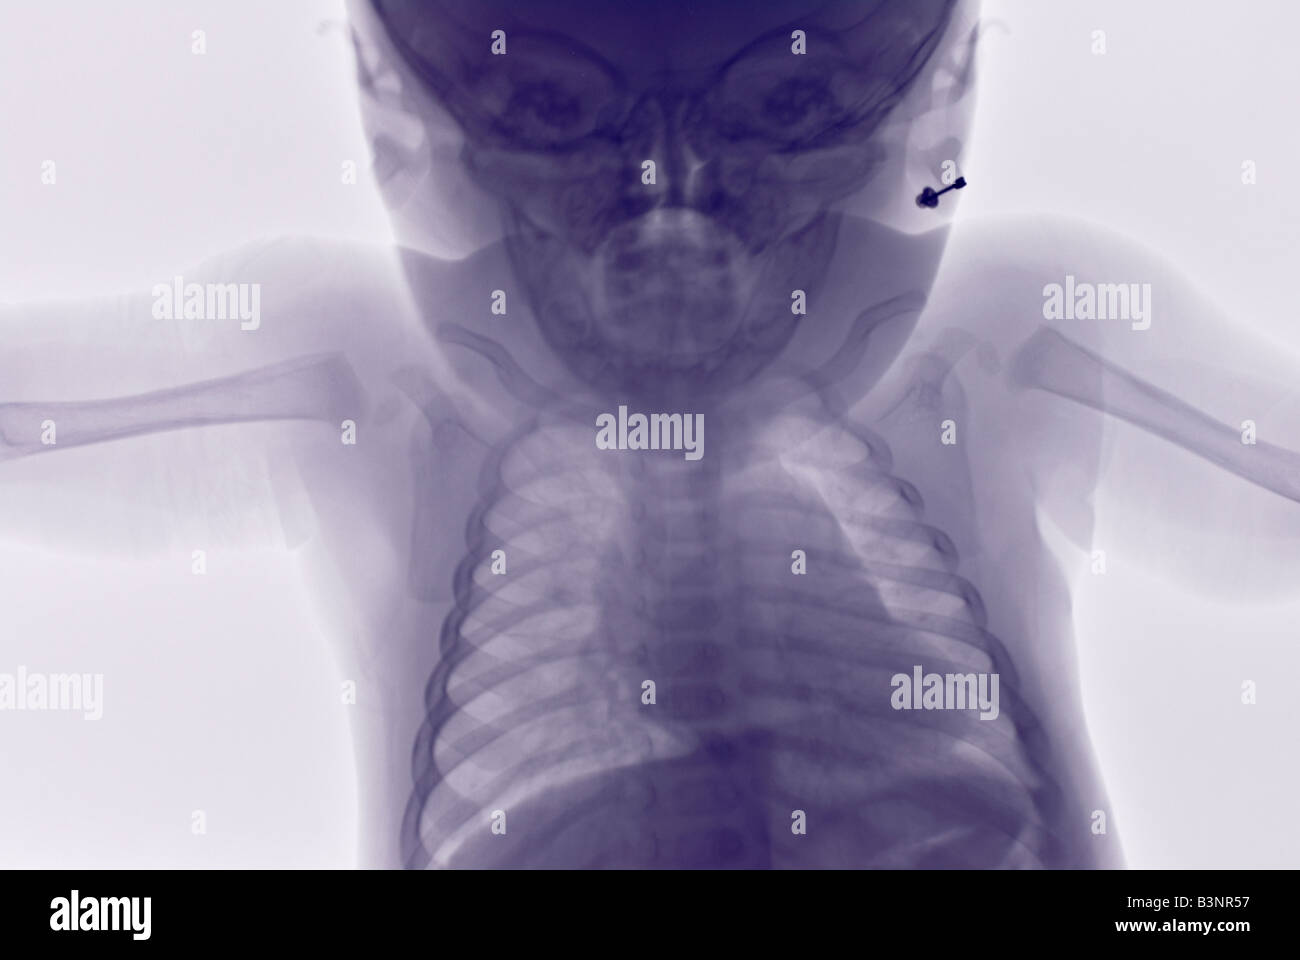 Rayos X de la parte superior del cuerpo de un 6 mes de edad, sospechoso de haber sido maltratado físicamente Foto de stock